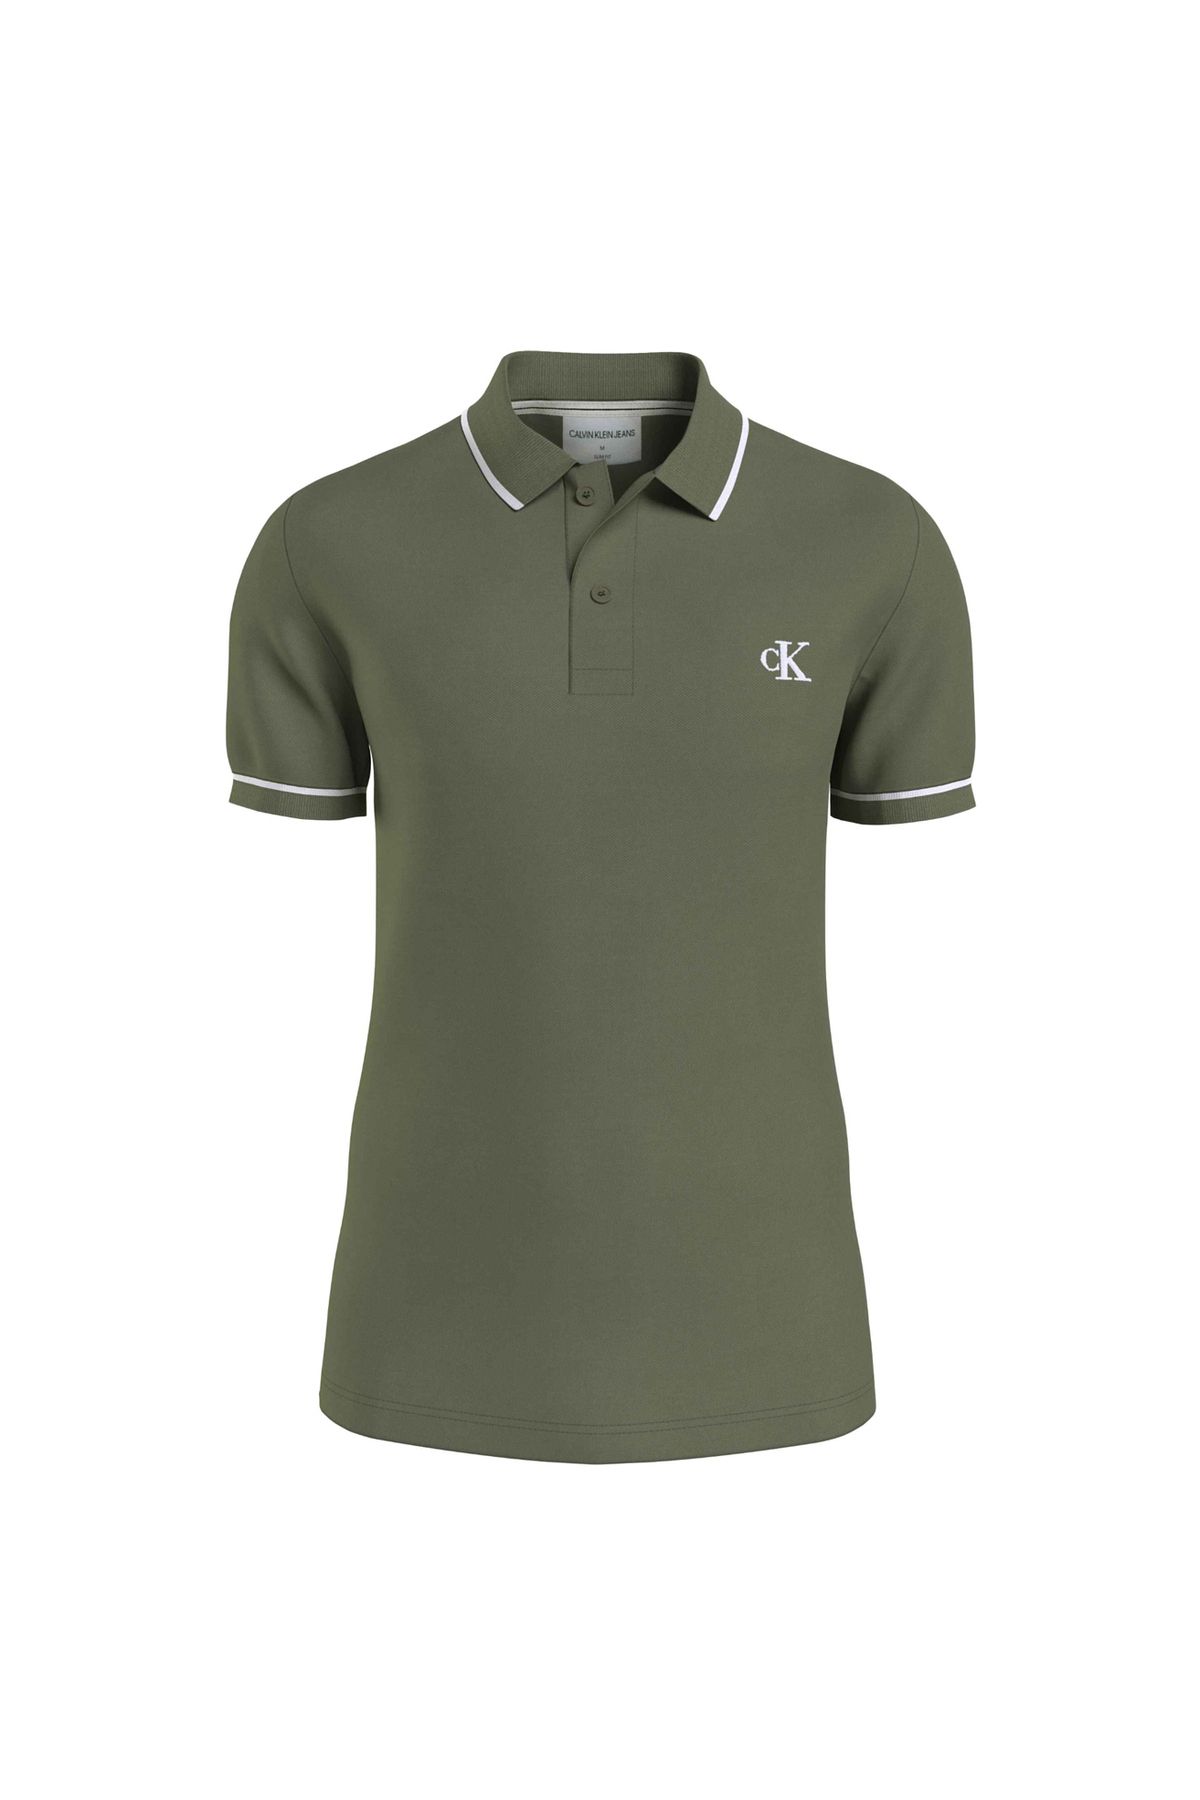 Calvin Klein Jeans Düz Koyu Yeşil Erkek Polo T-shirt J30j315603ldy